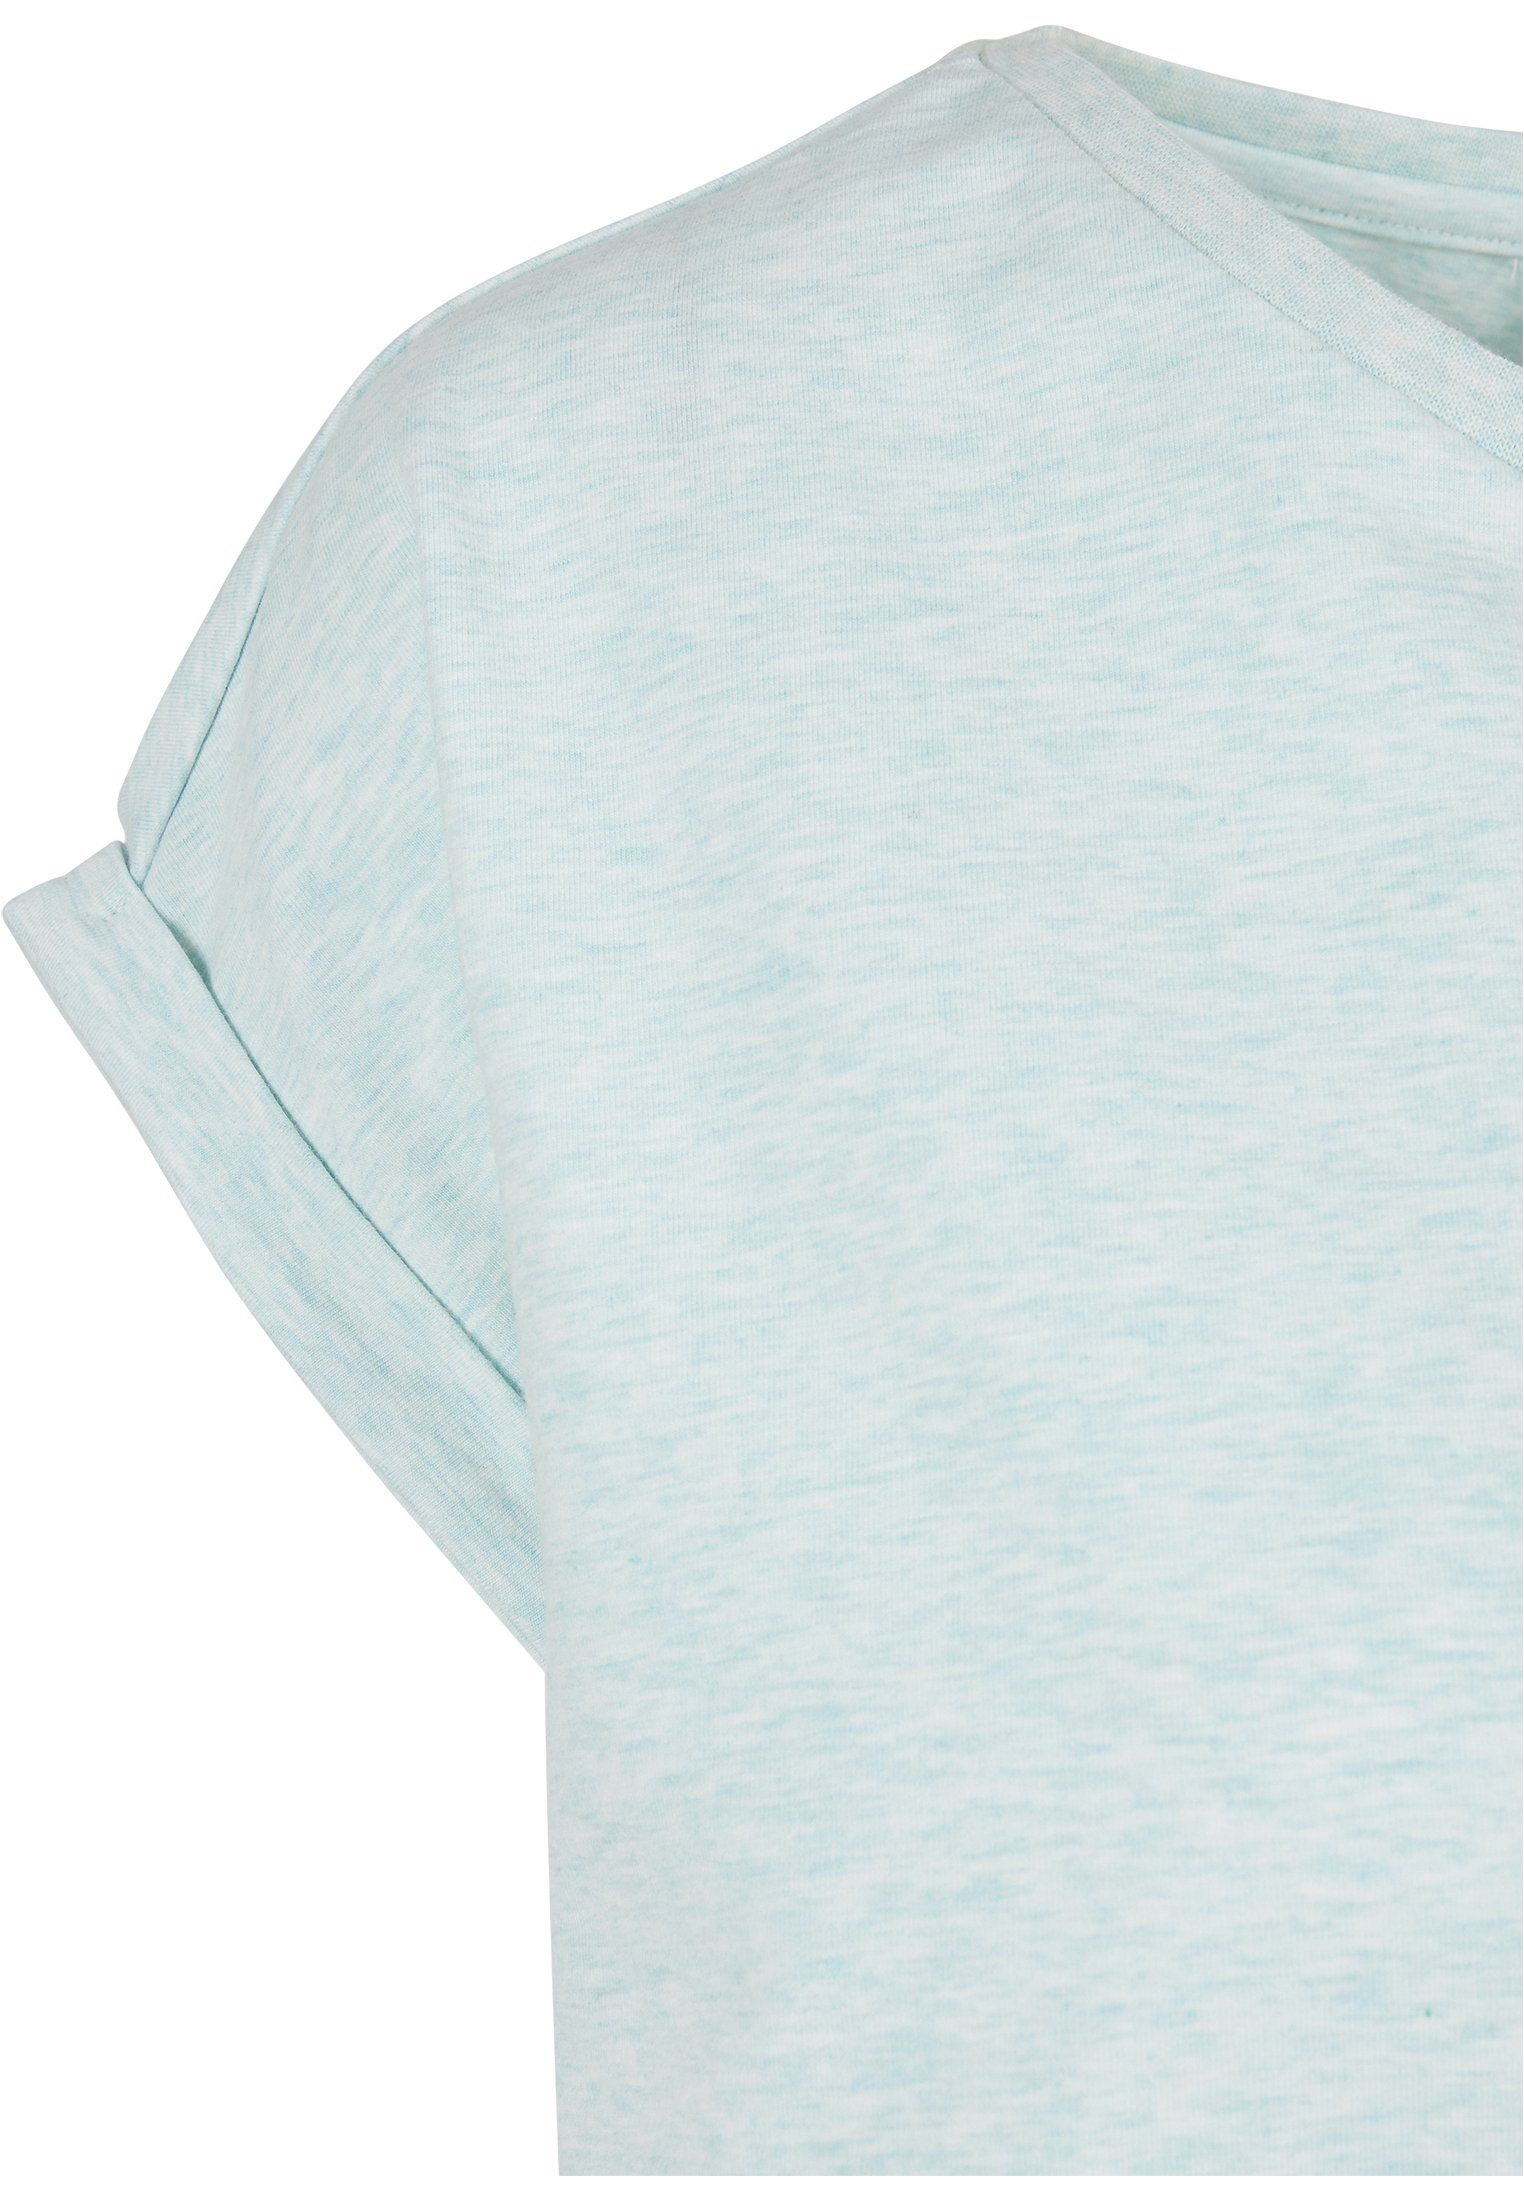 melange aqua Kurzarmshirt (1-tlg) URBAN CLASSICS Tee Extended Frauen Color Melange Shoulder Ladies